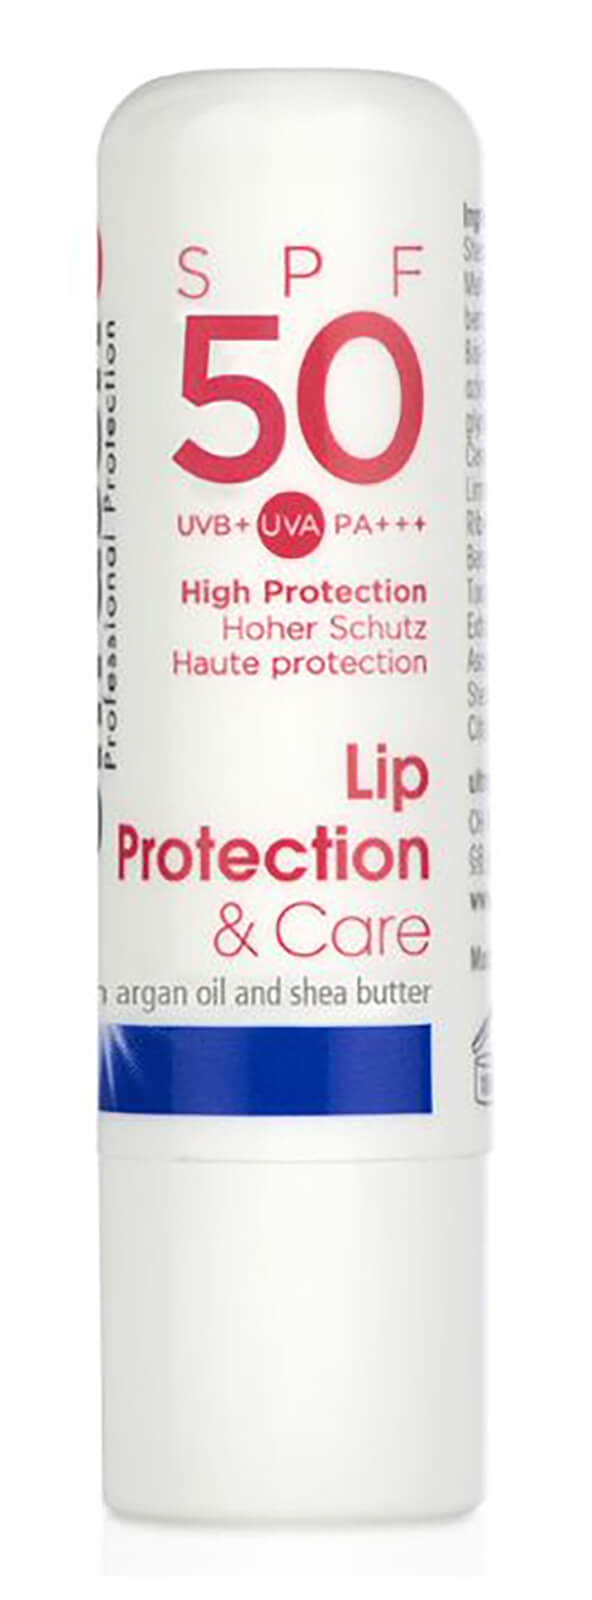 Ultrasun Lip Protection Spf50